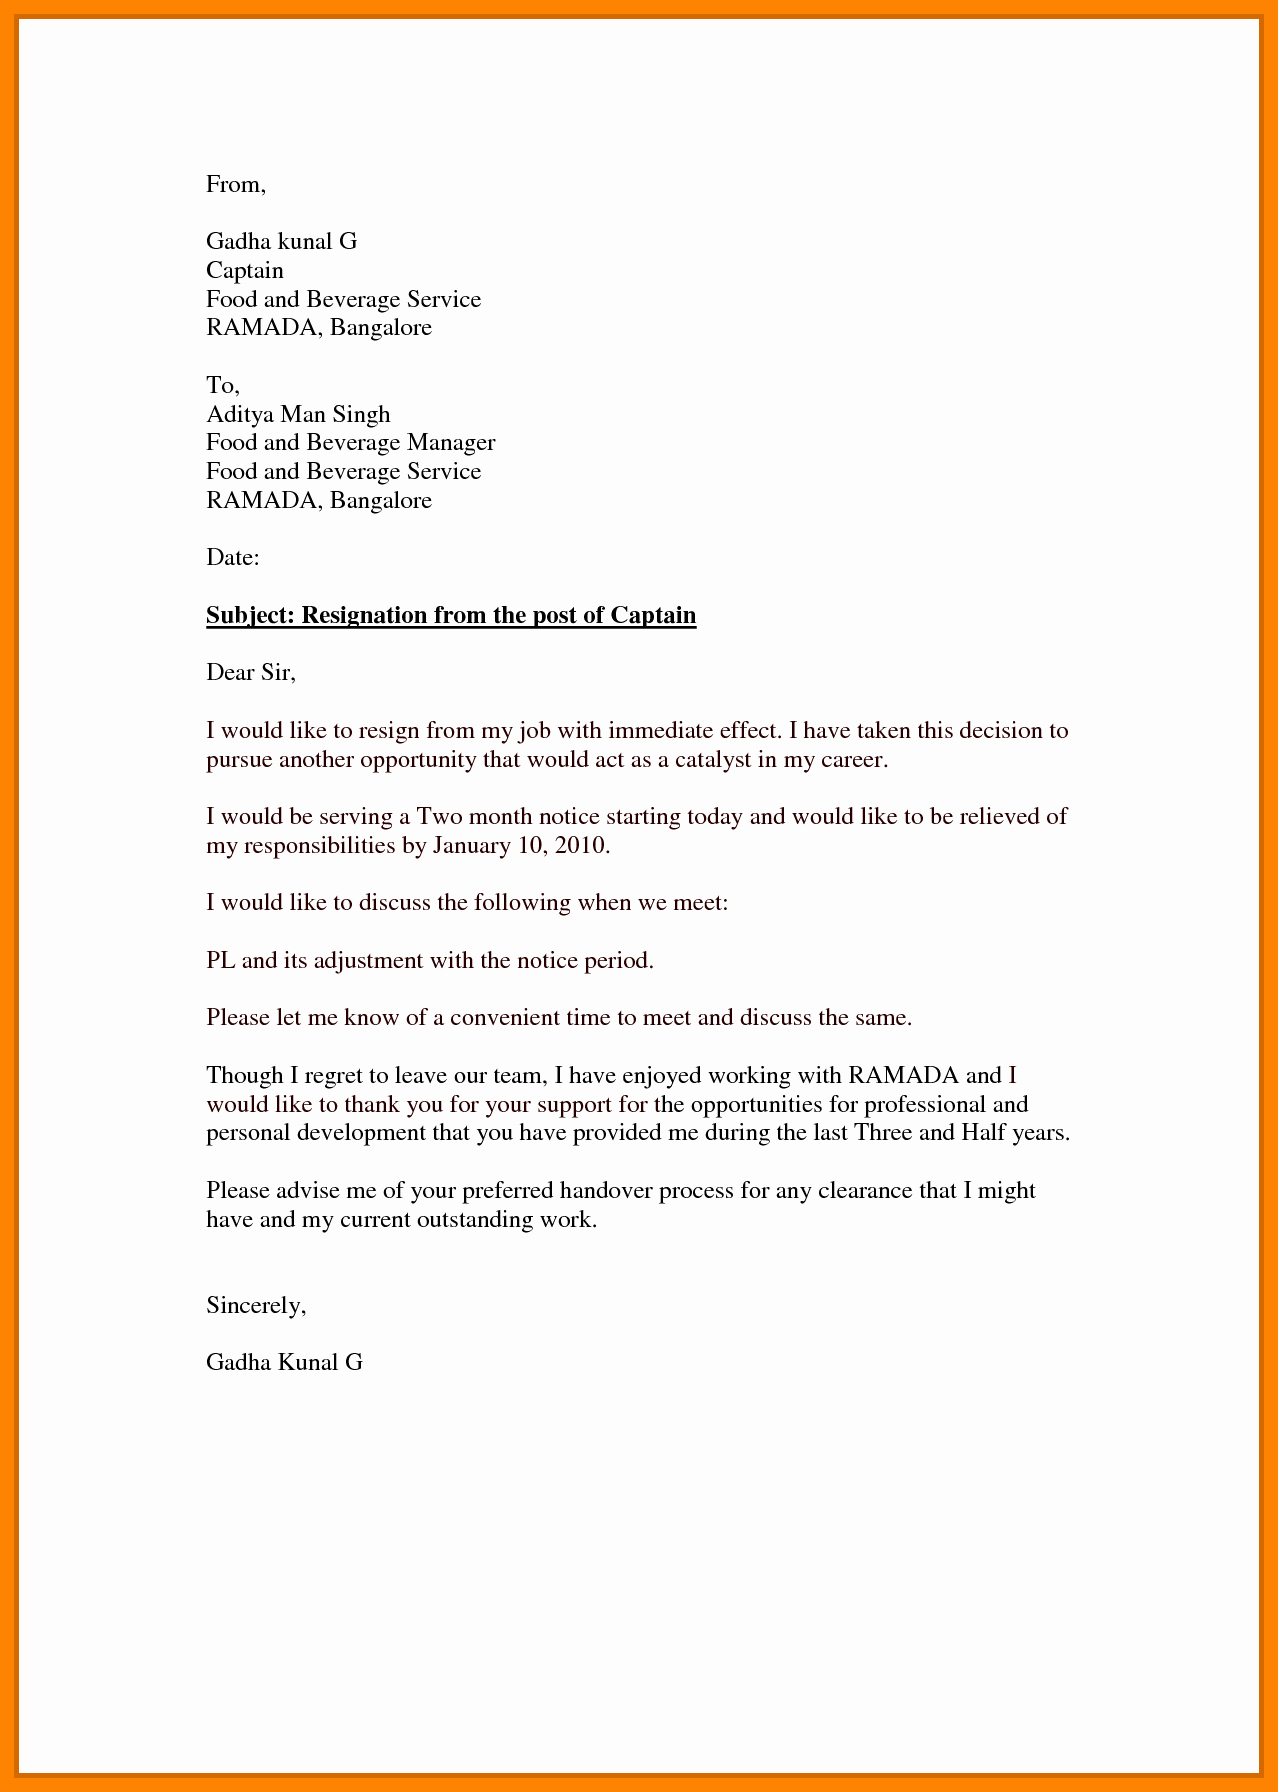 Resignation Letter Effective Immediately New 7 Effective Immediately Resignation Letter